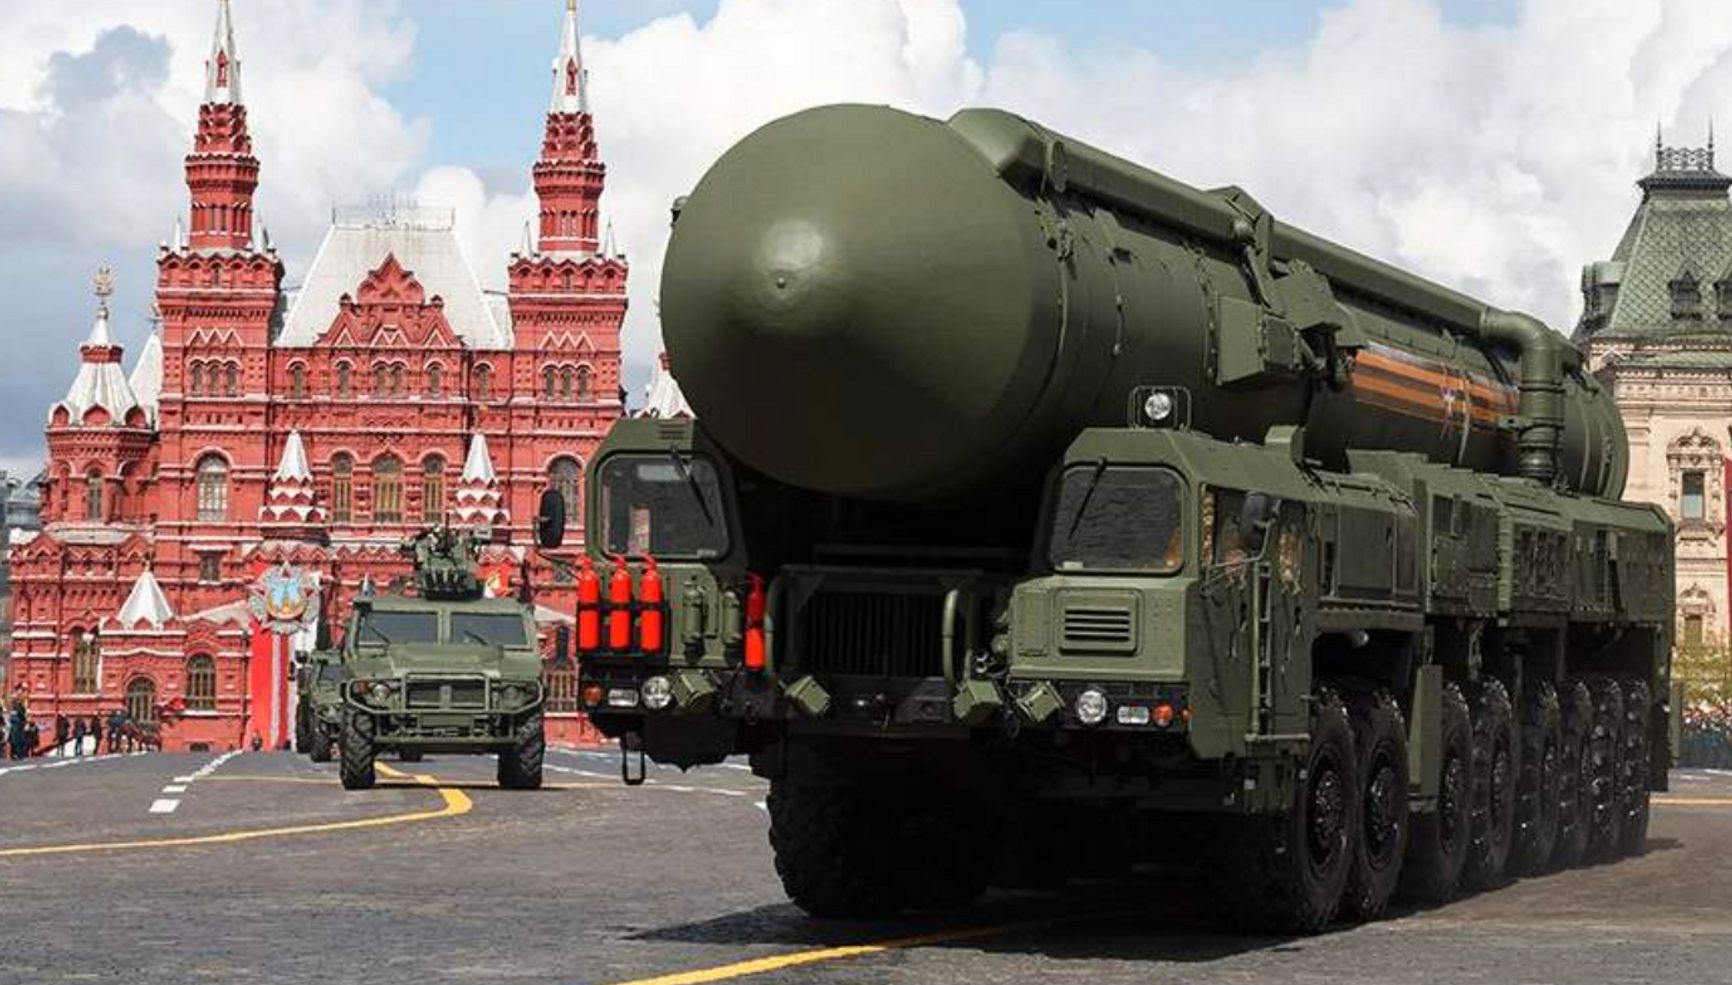 Решение Путина хранить ядерное оружие в Беларуси направлено на «ядерную тревогу» на Западе и усиление контроля над Беларусью — эксперты